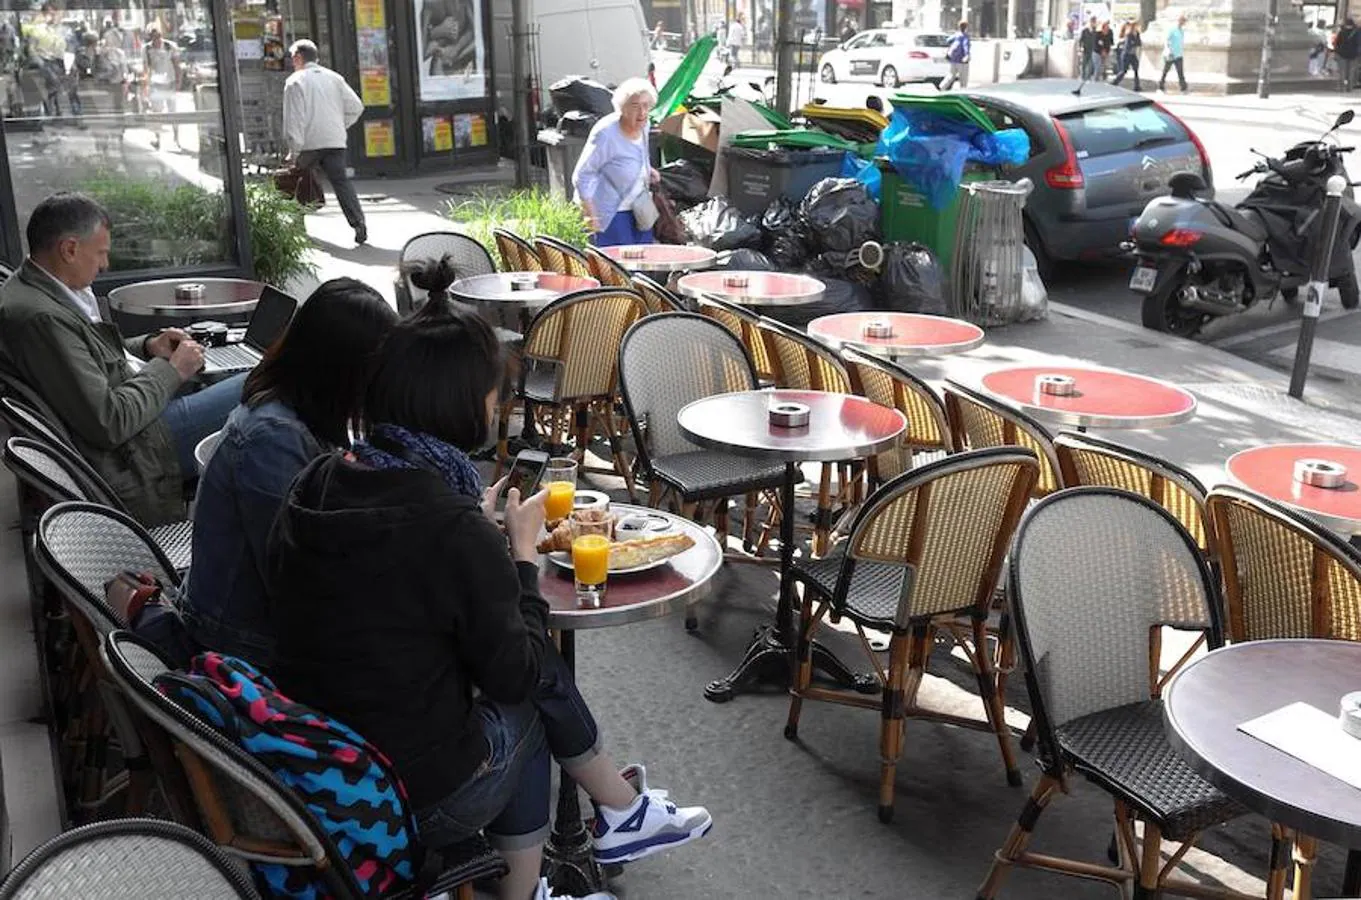 Los turistas deben lidiar con los desperdicios que se acumulan frente a cafés y restaurantes